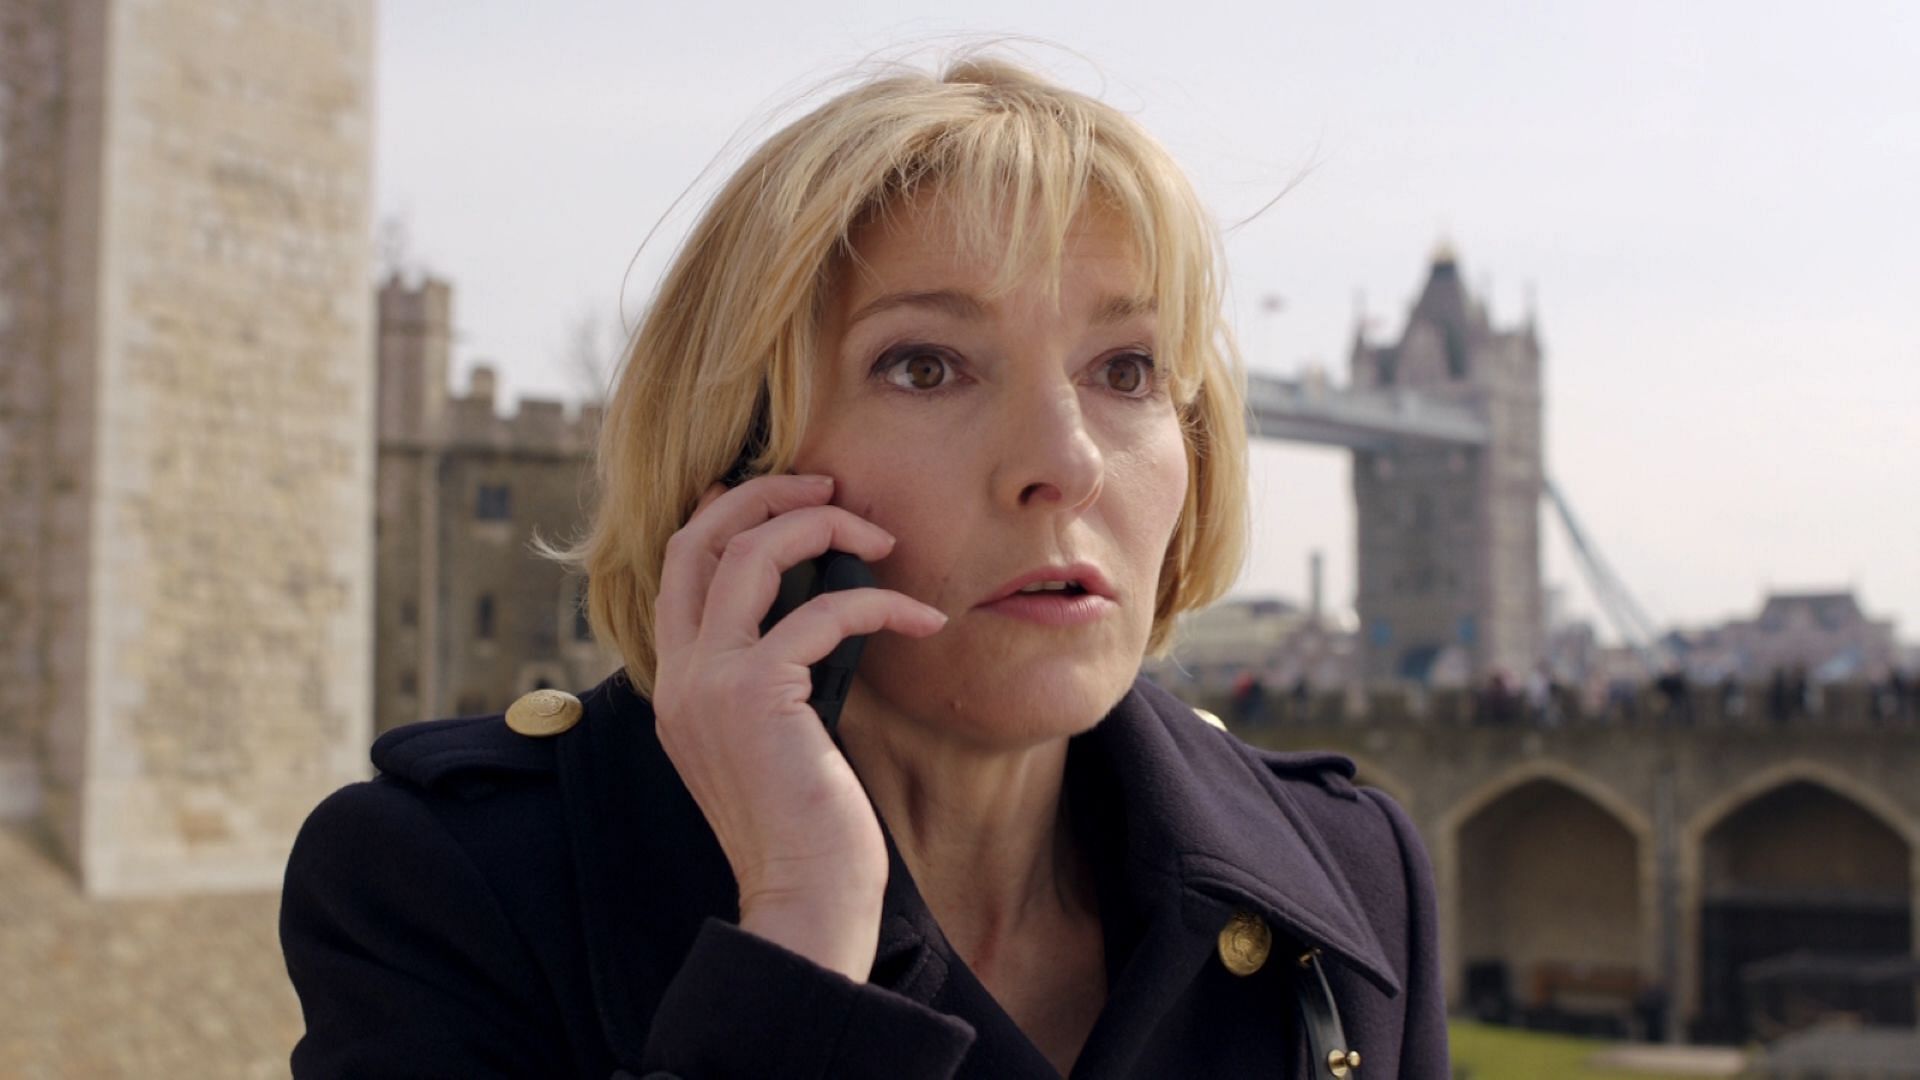 Jemma Redgrave in Doctor Who (Image via BBC)